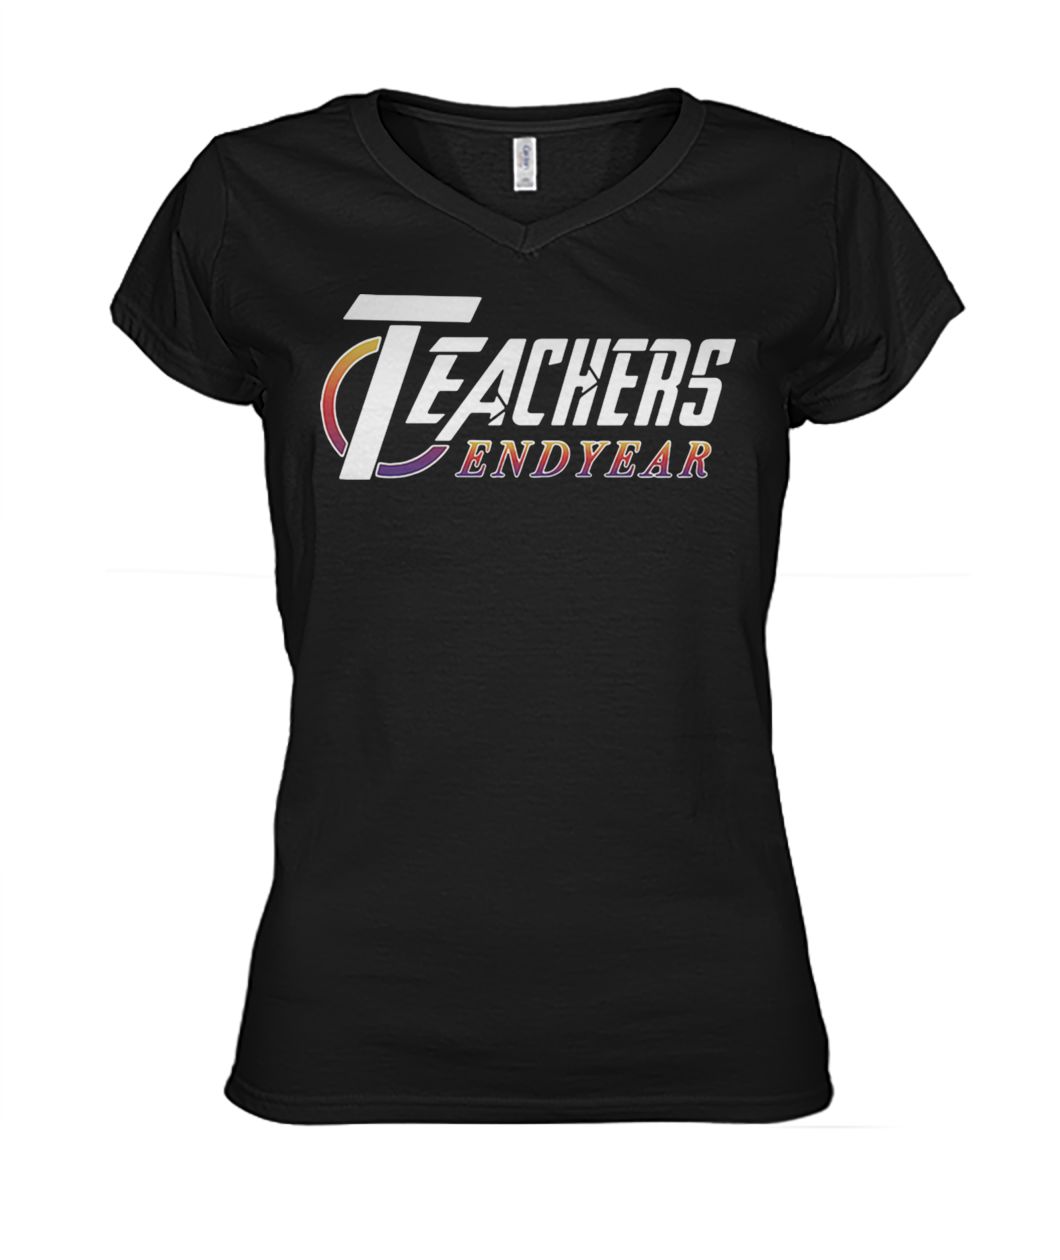 Teacher endyear avengers endgame women's v-neck